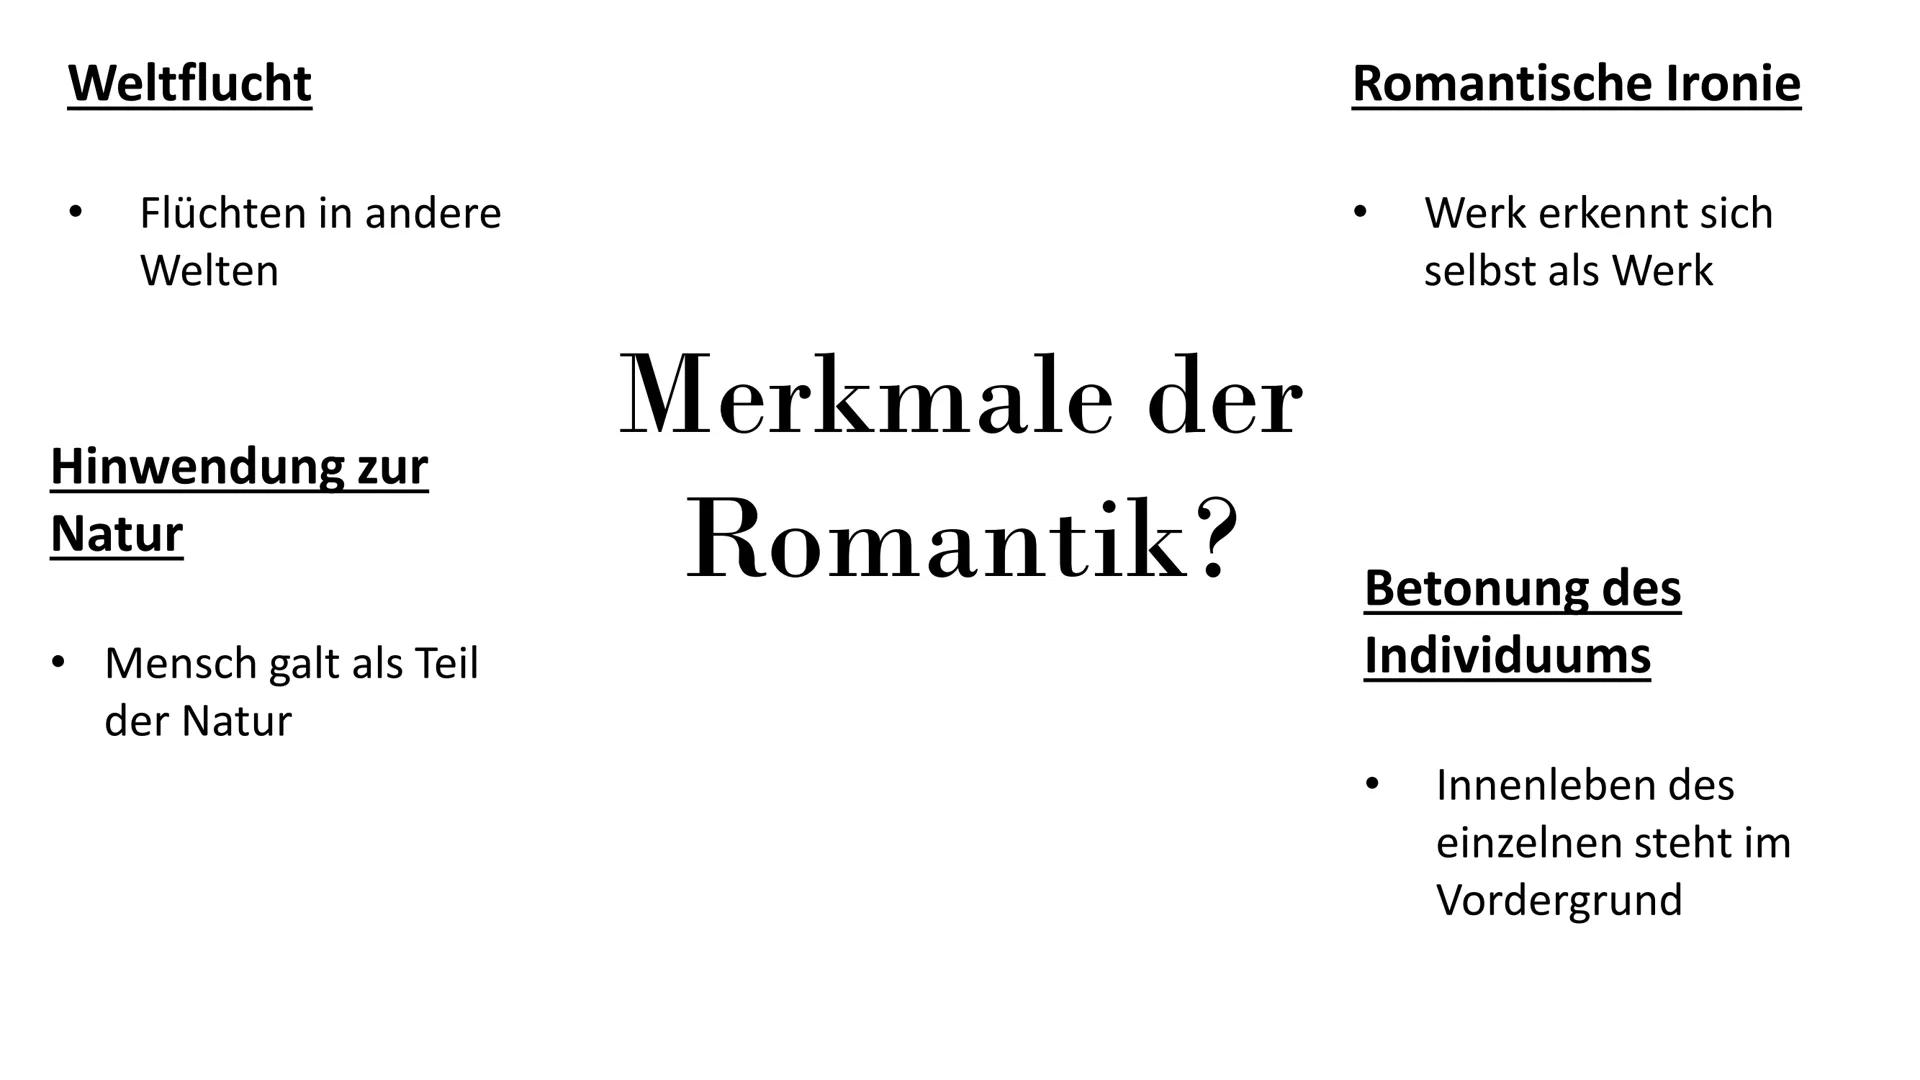 Romantik
Eine Literaturepoche voller Träumen, Fantasien und
Sehnsucht
(1795-1835)
von Melek Yakut & Vanessa Seib Gliederung
Begrifferläuteru